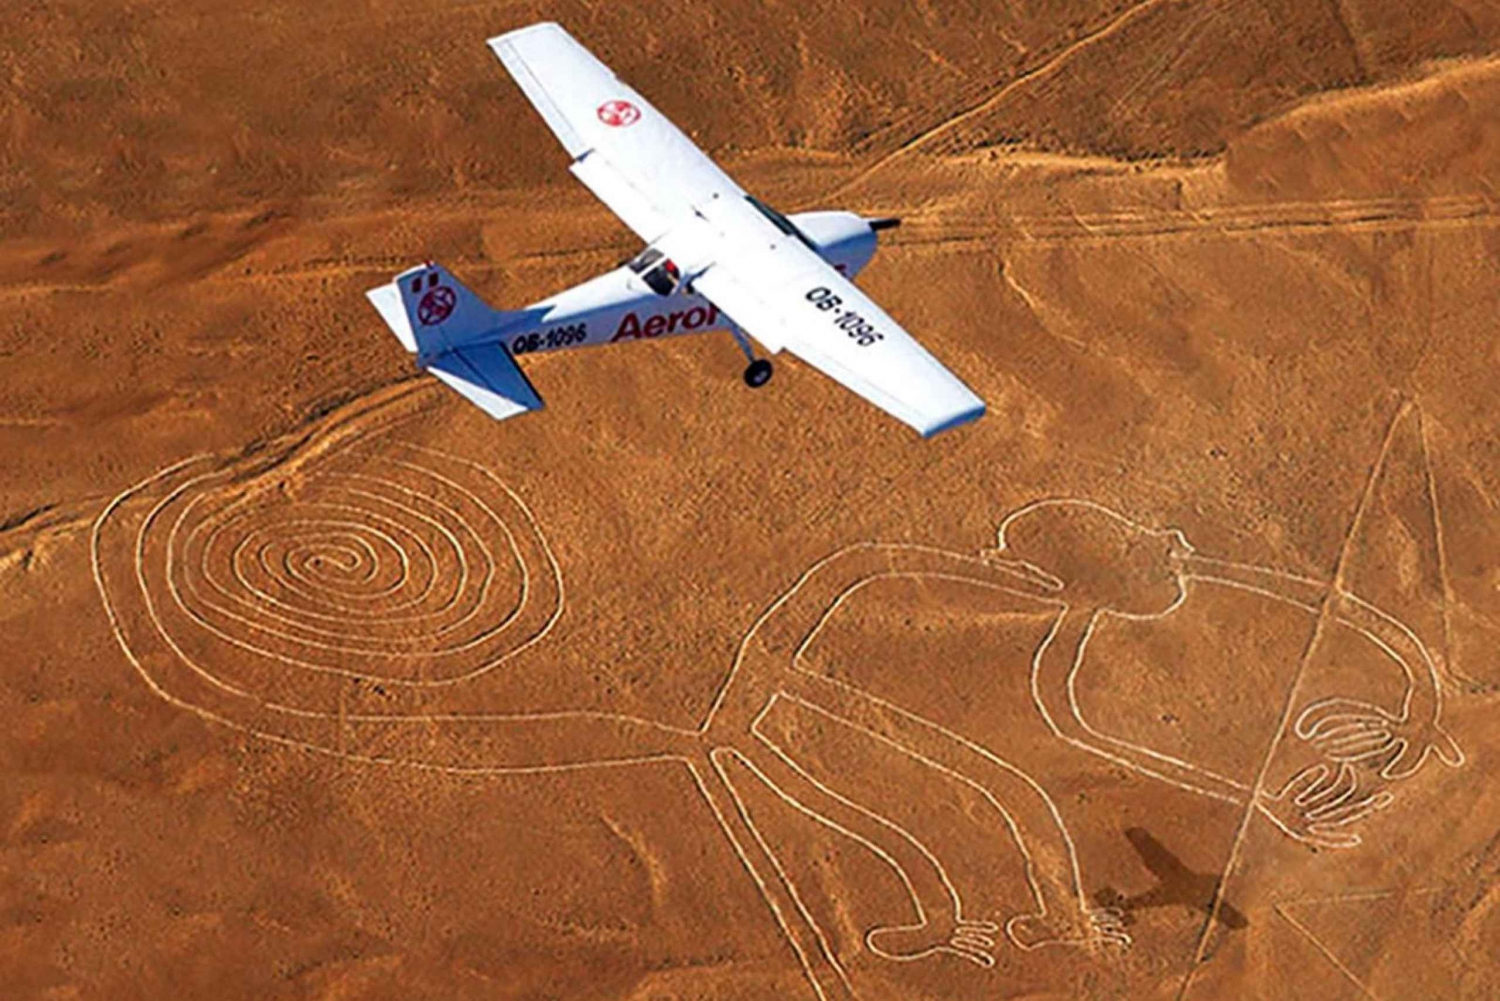 Ica: Nazcan lentopaikalta Nazca-linjojen ylitse